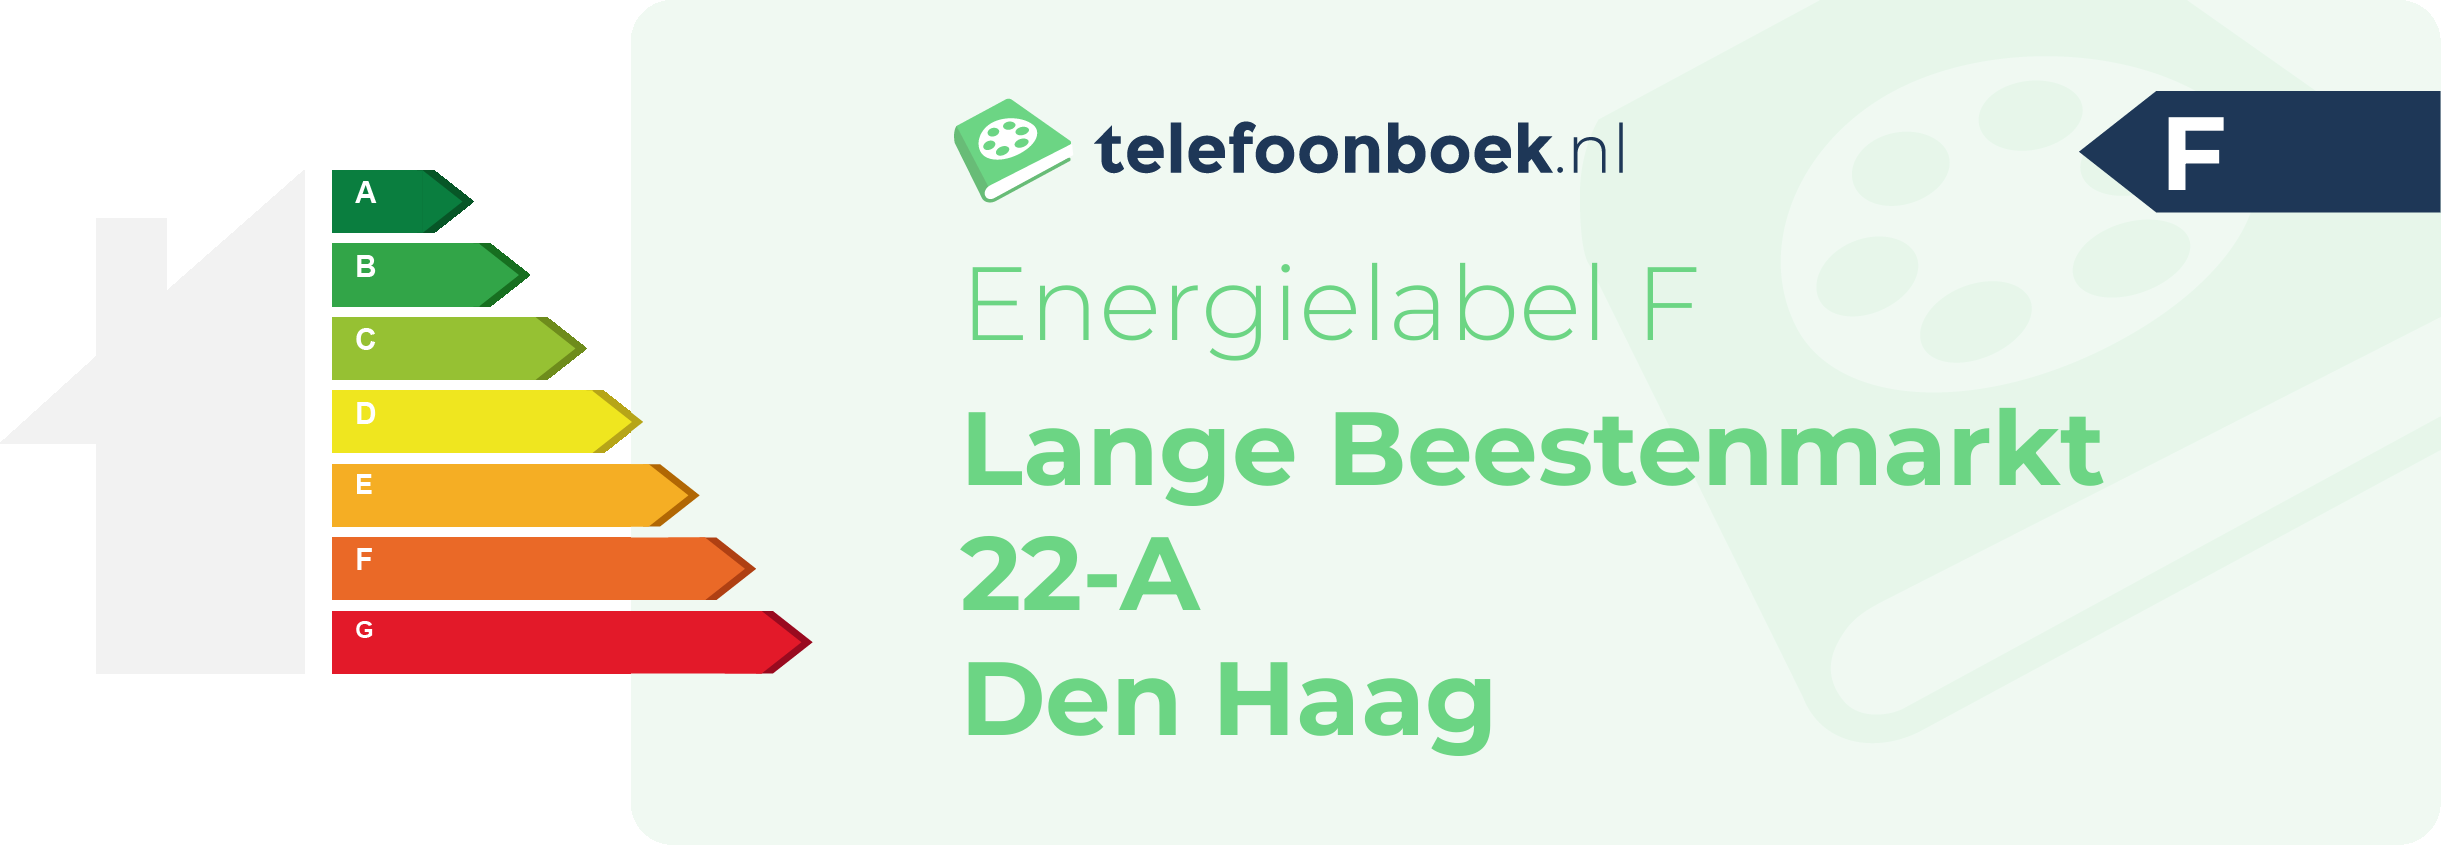 Energielabel Lange Beestenmarkt 22-A Den Haag